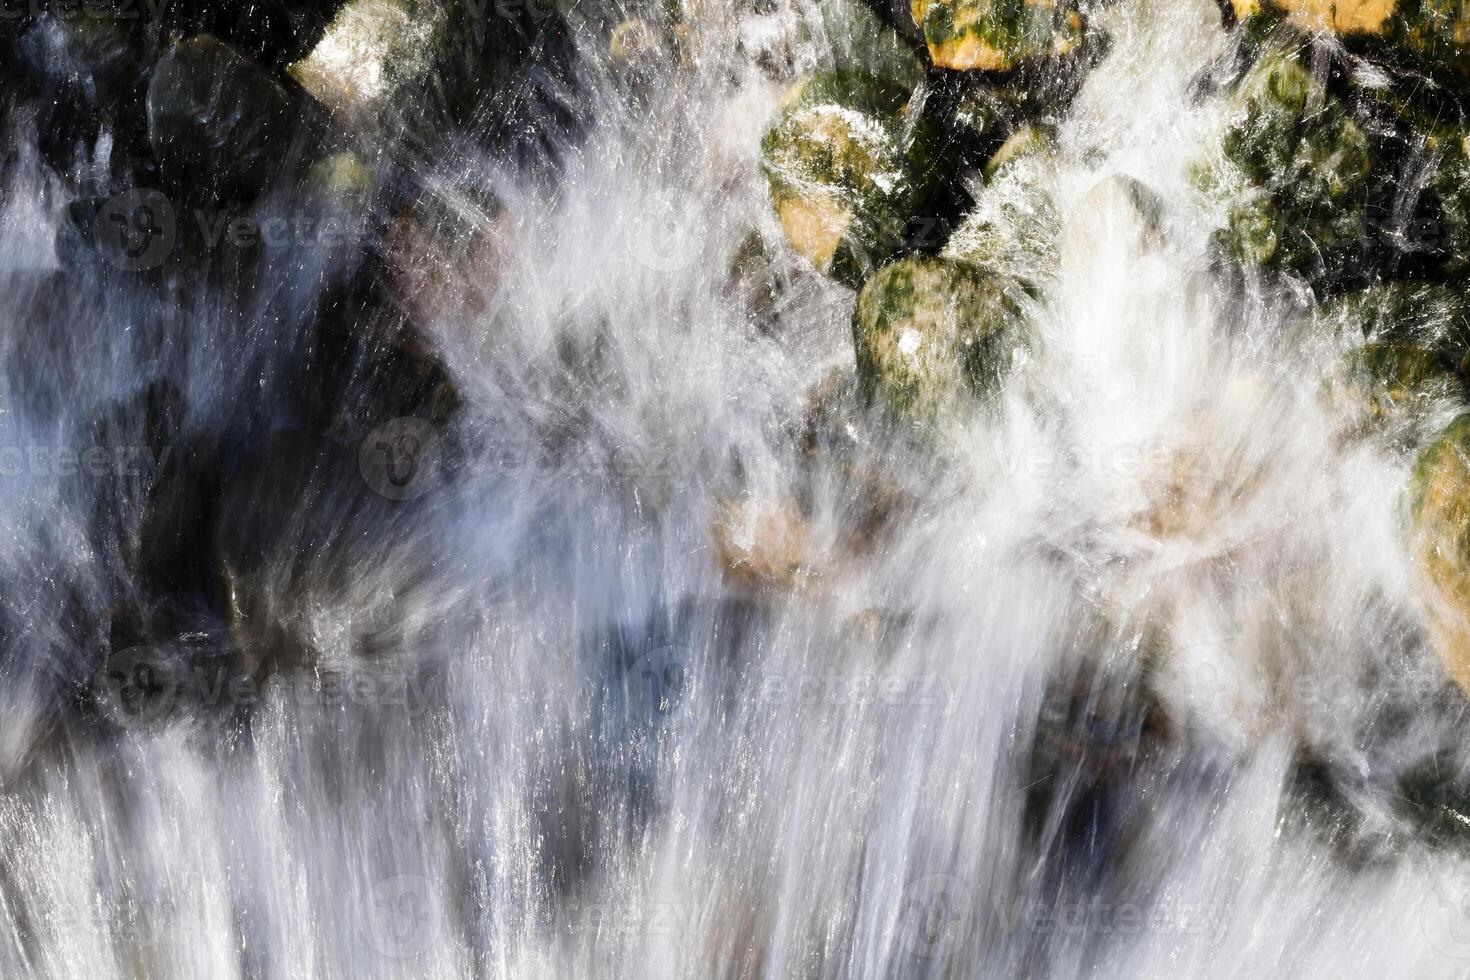 agua corriente pulverización terminado musgo cubierto rocas foto